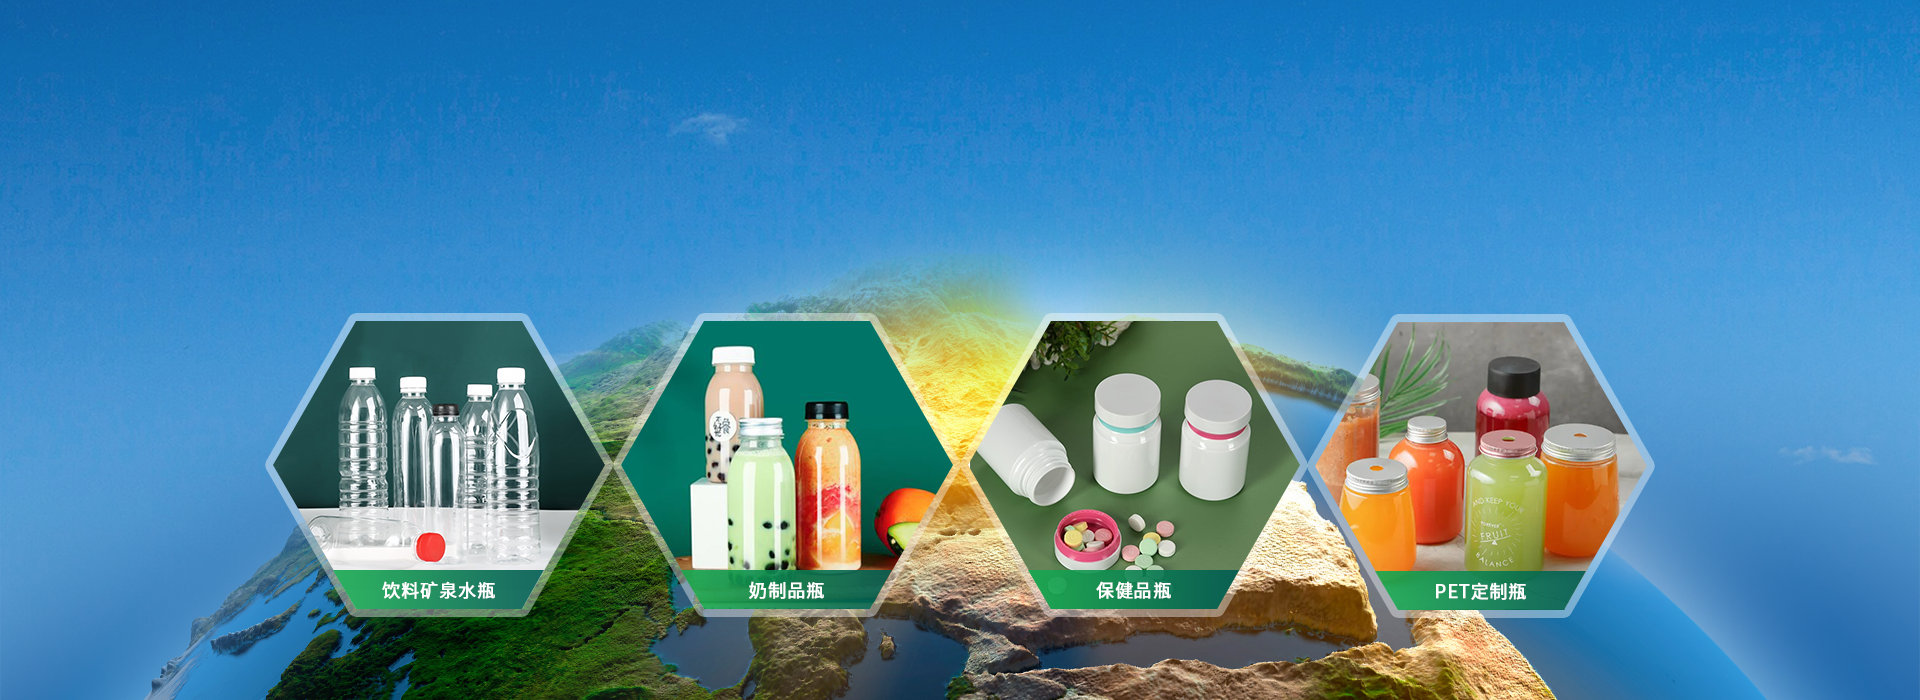 PET塑料瓶<br/>研發、生產、銷售、服務一體化企業